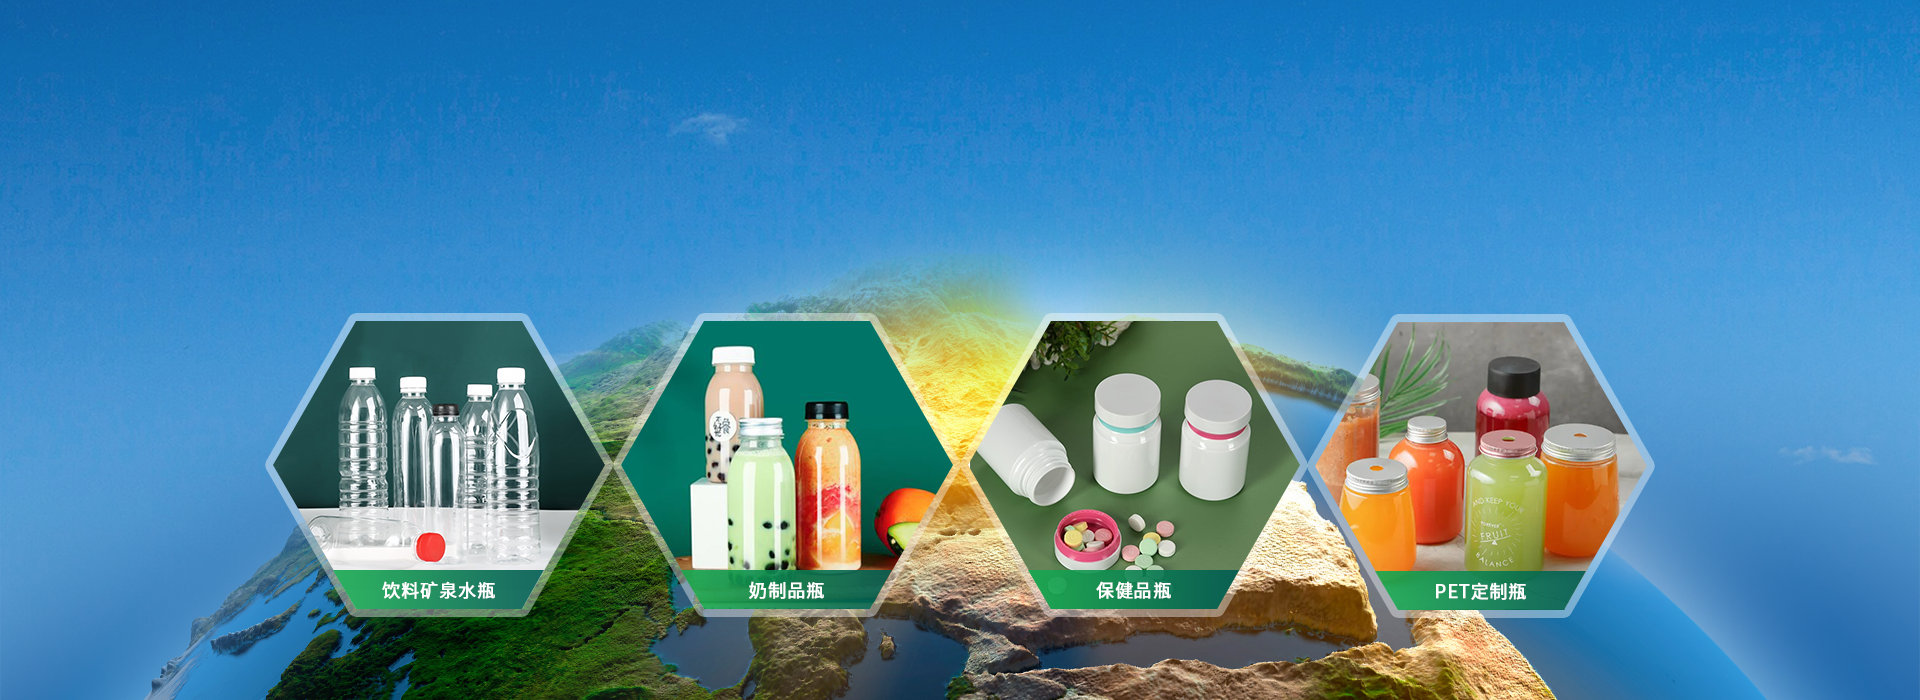 PET塑料瓶<br/>研發、生產、銷售、服務一體化企業